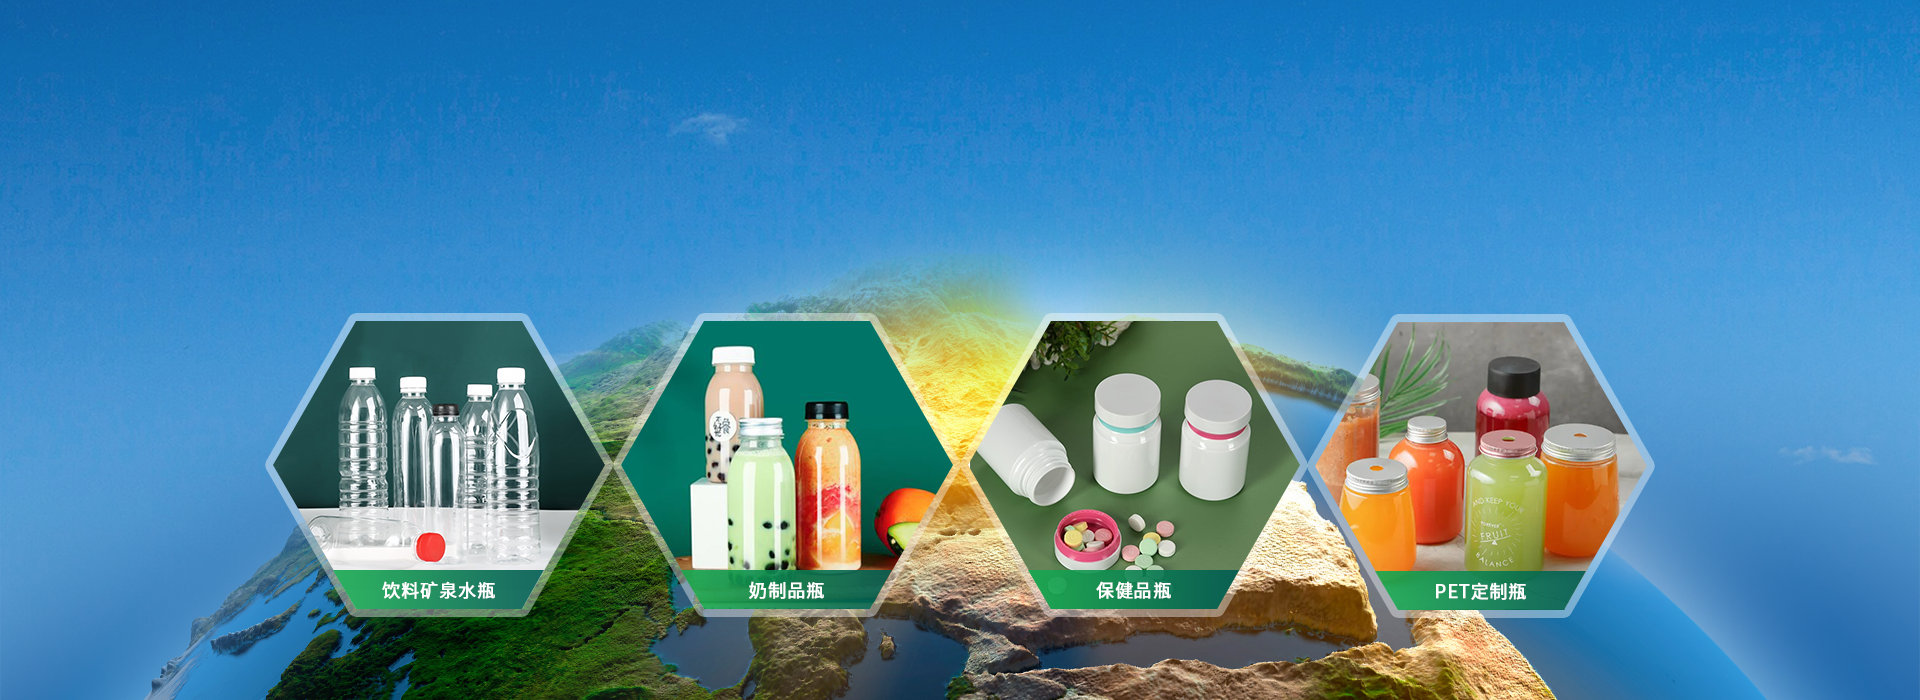 PET塑料瓶<br/>研發、生產、銷售、服務一體化企業